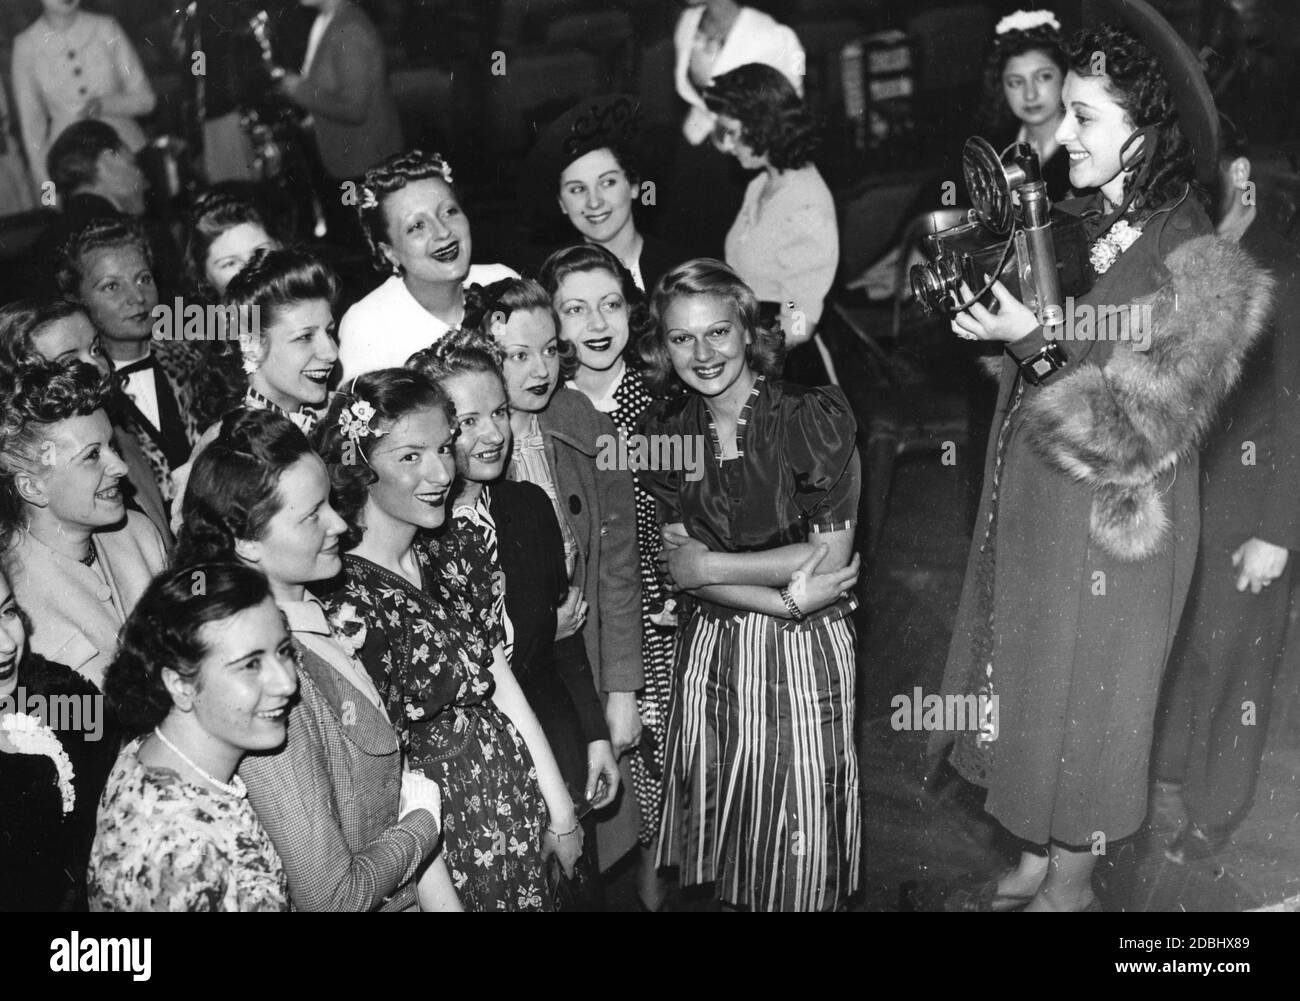 'Élection des candidats au concours de beauté 'miss photo' à Paris en 1939.' Banque D'Images